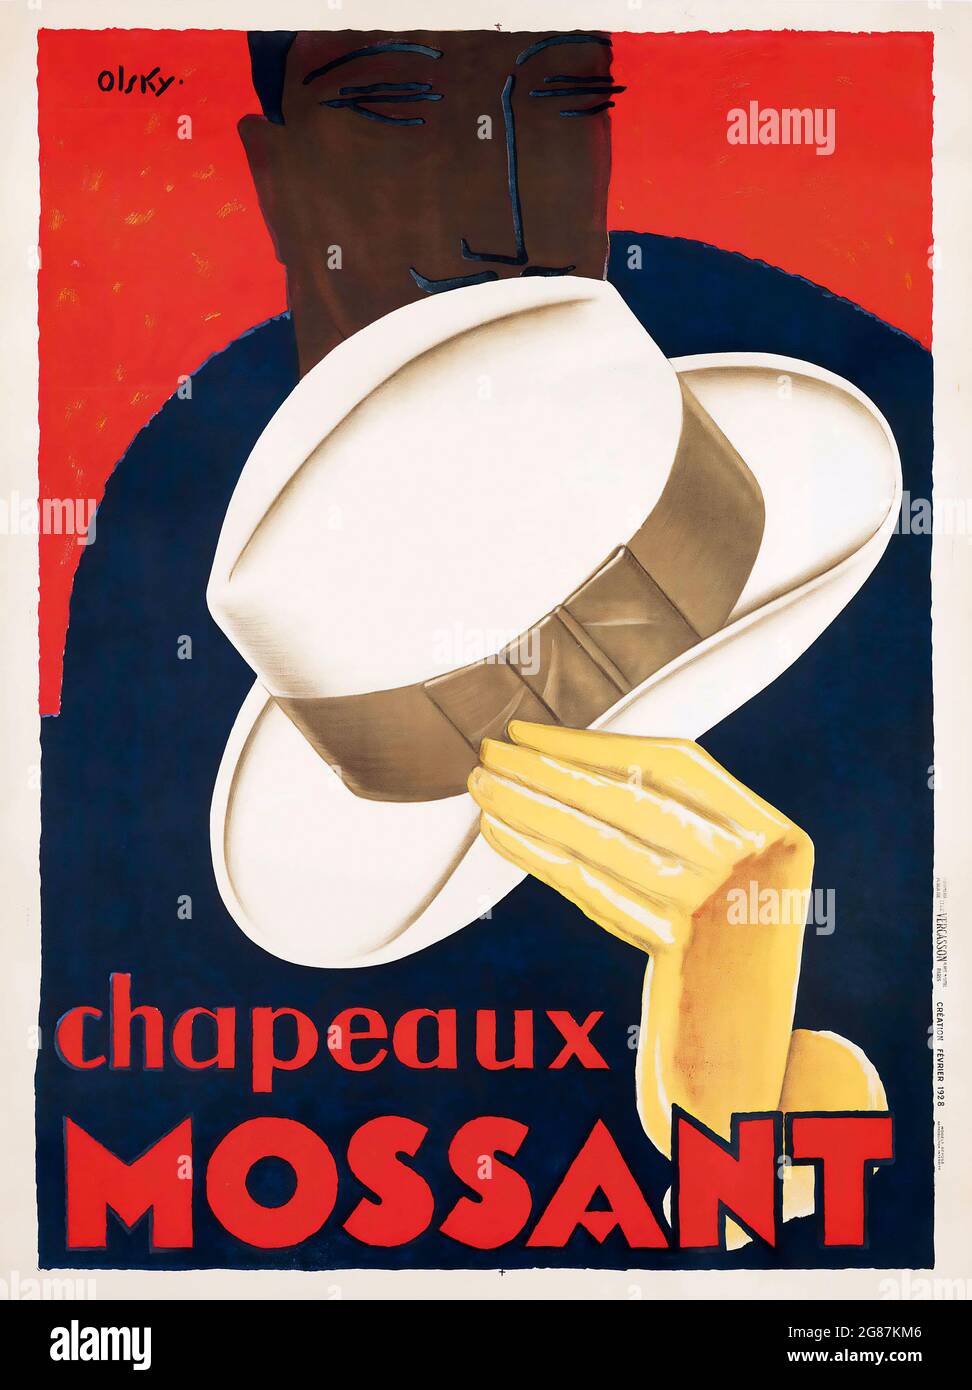 Französischer Art déco Chapeaux Mossant - Werbeplakat von Olsky. 1928. Werbung für Hüte. Stockfoto